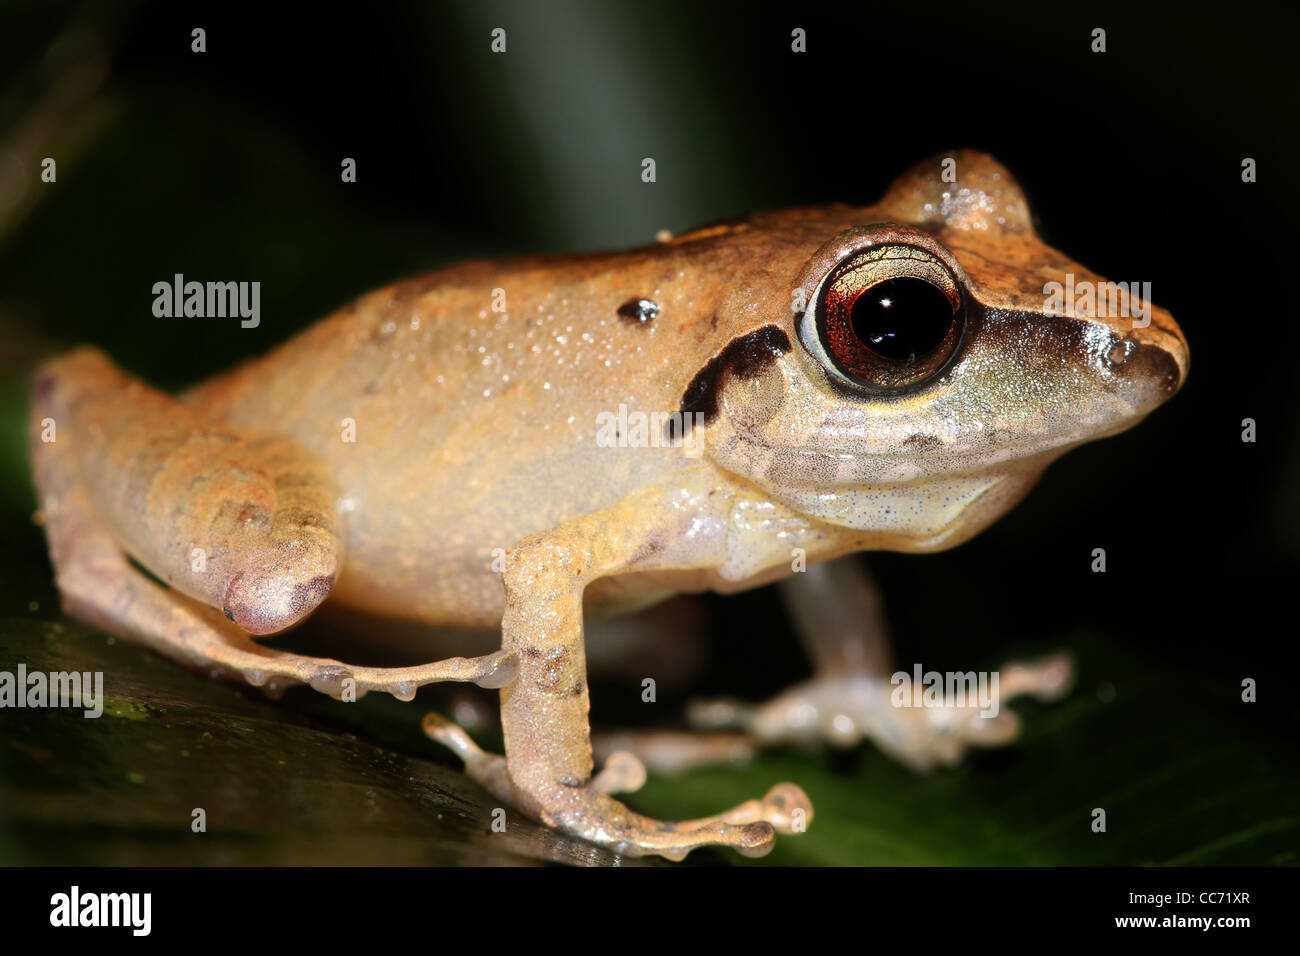 The Peruvian Rain Frog (Pristimantis peruvianus) in the Amazon jungle Stock Photo